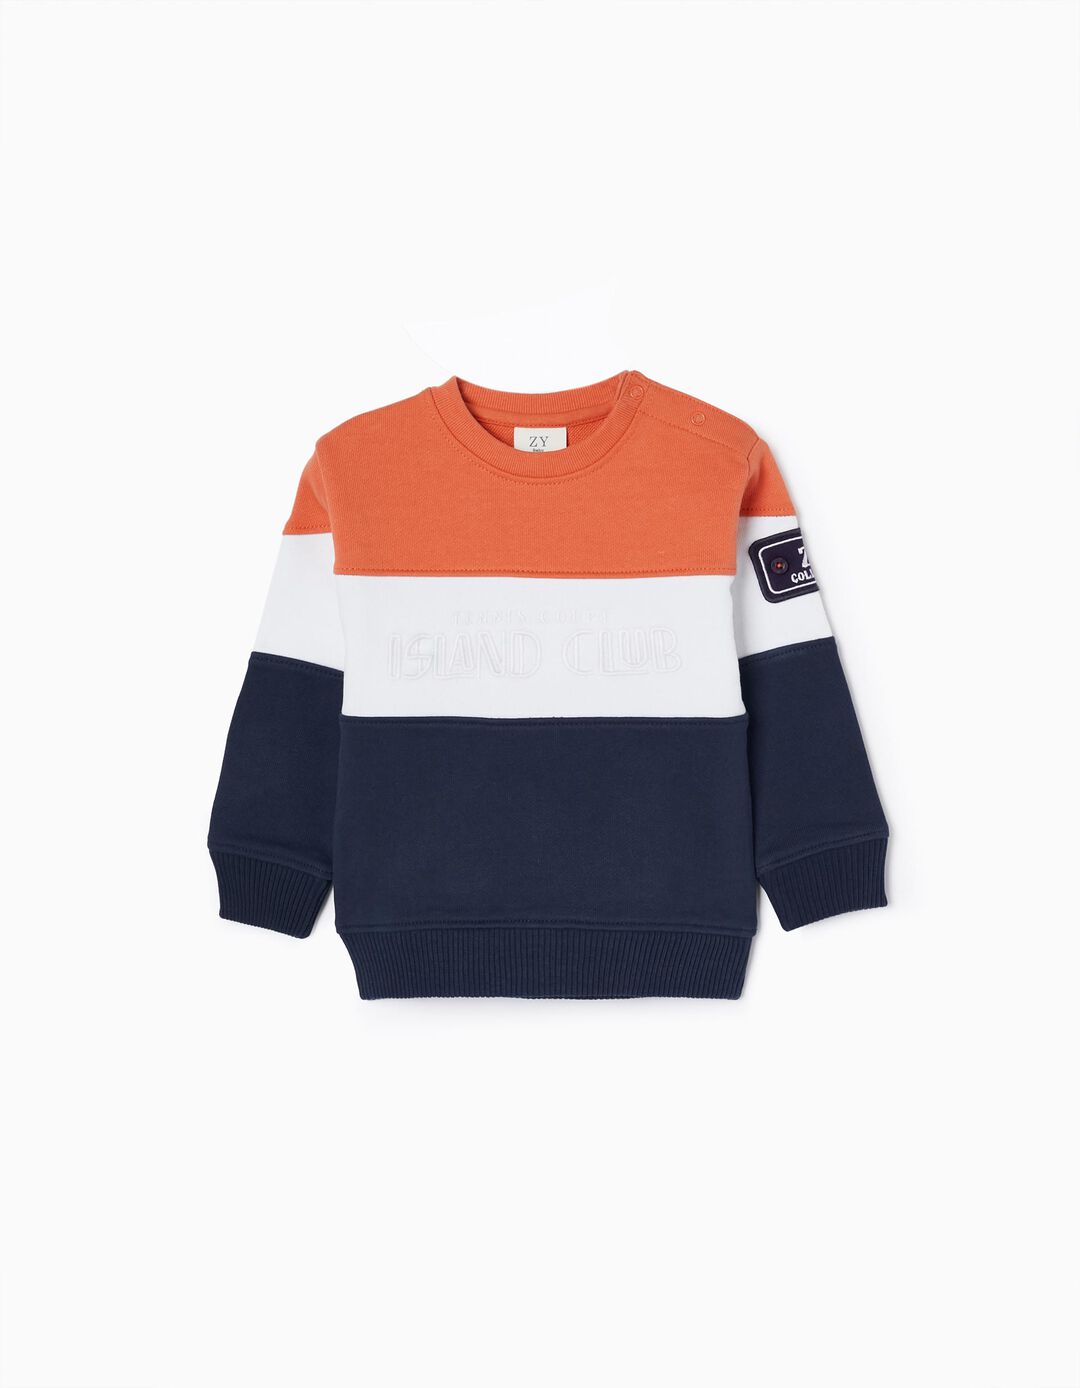 Cotton Sweatshirt for Baby Boys, Orange/White/Dark Blue